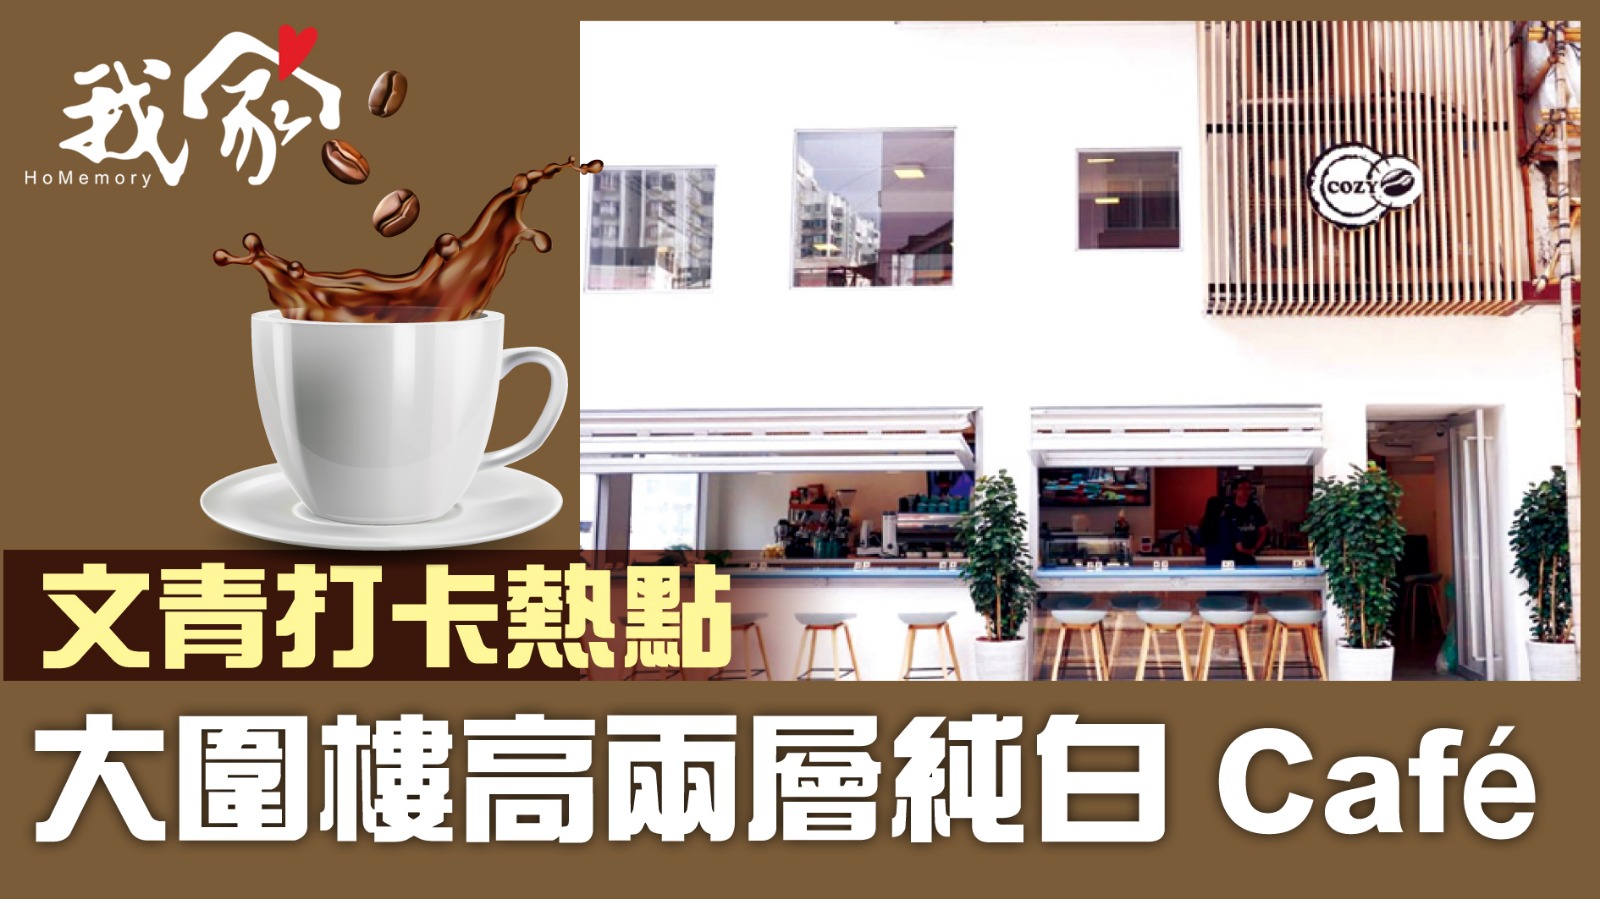 (沙田)文青打卡熱點 大圍樓高兩層純白 Café